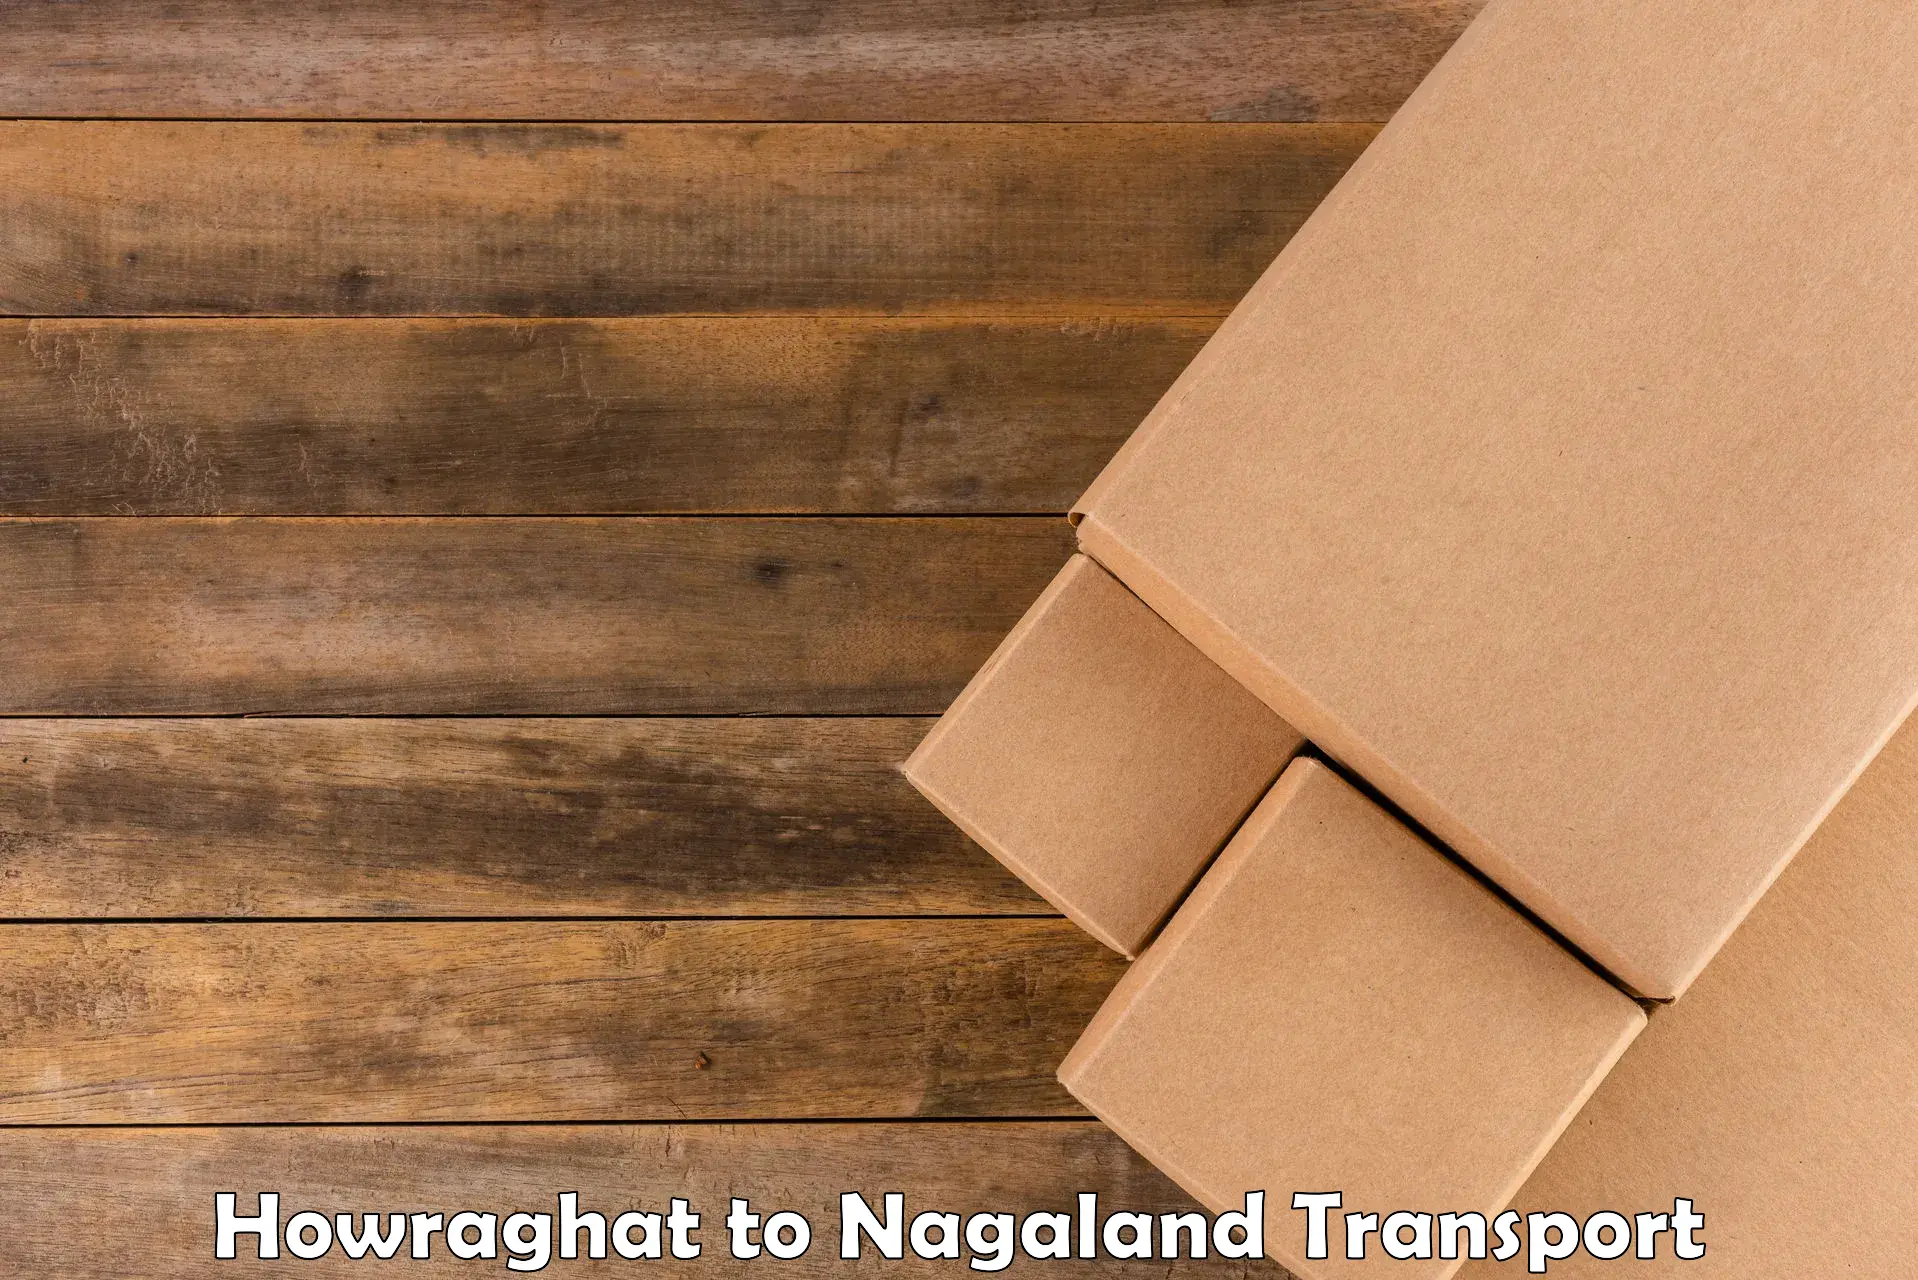 Parcel transport services Howraghat to NIT Nagaland